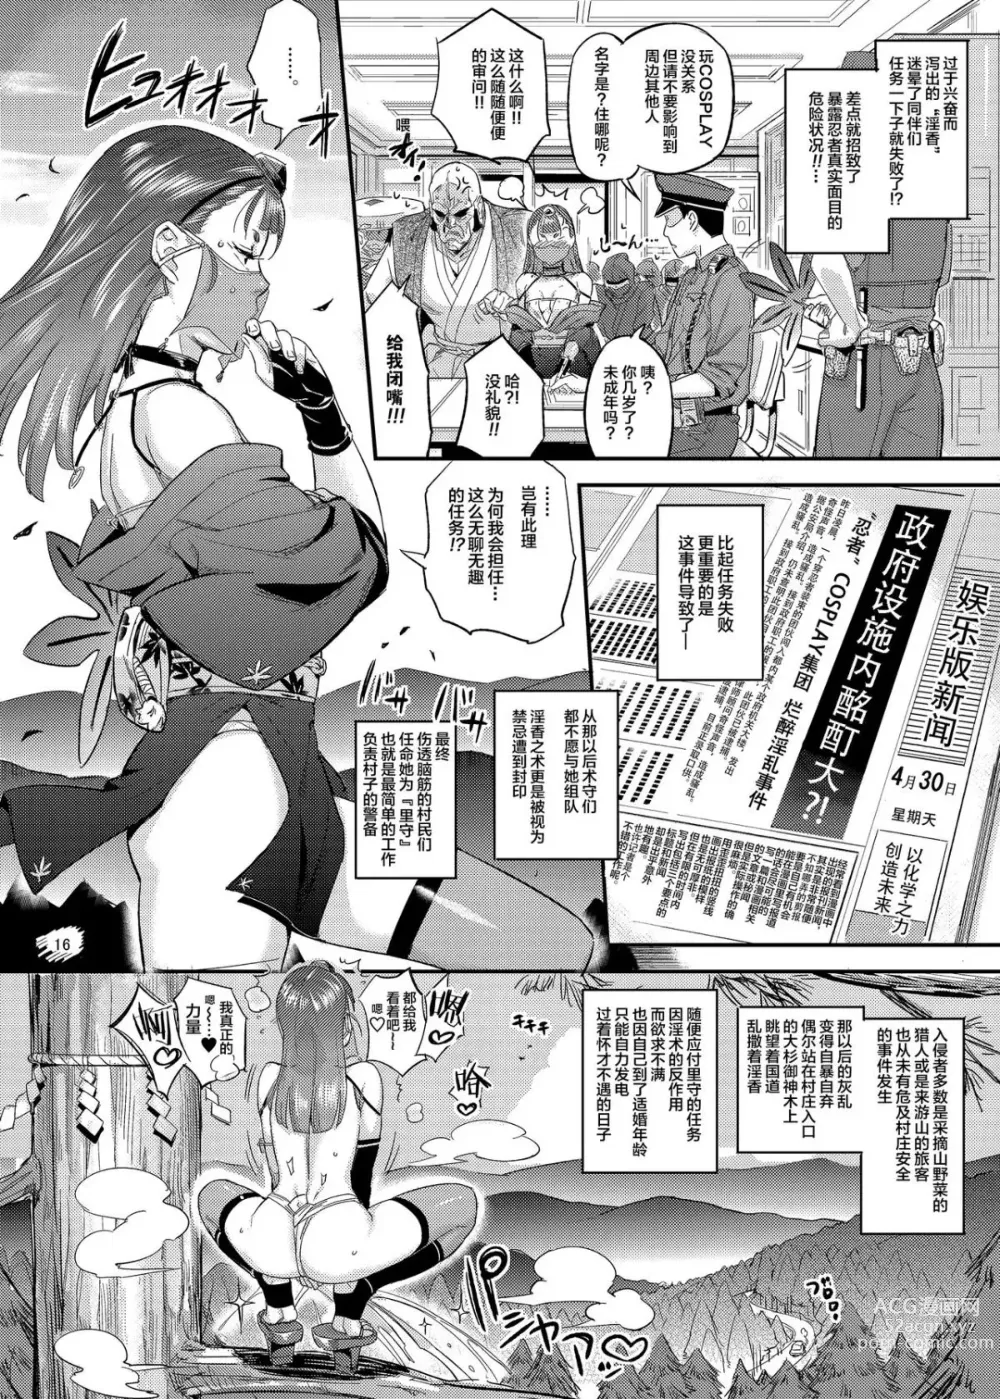 Page 17 of doujinshi Satomori Haira Inpouchou